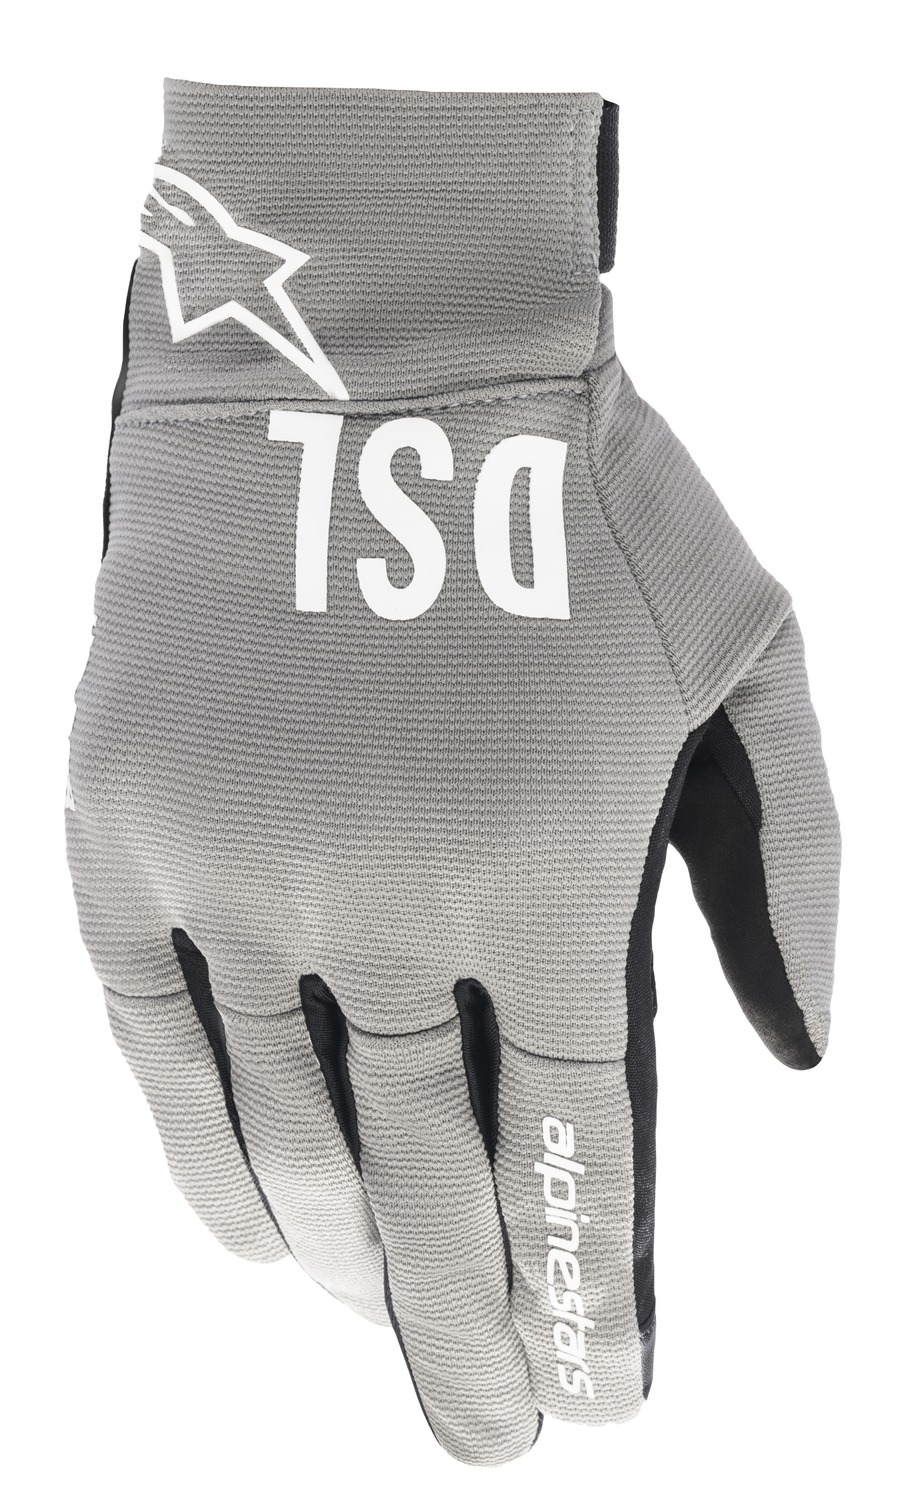 gloves SHOTARO collection DIESEL JEANS 2022, ALPINESTARS (grey/white/black)